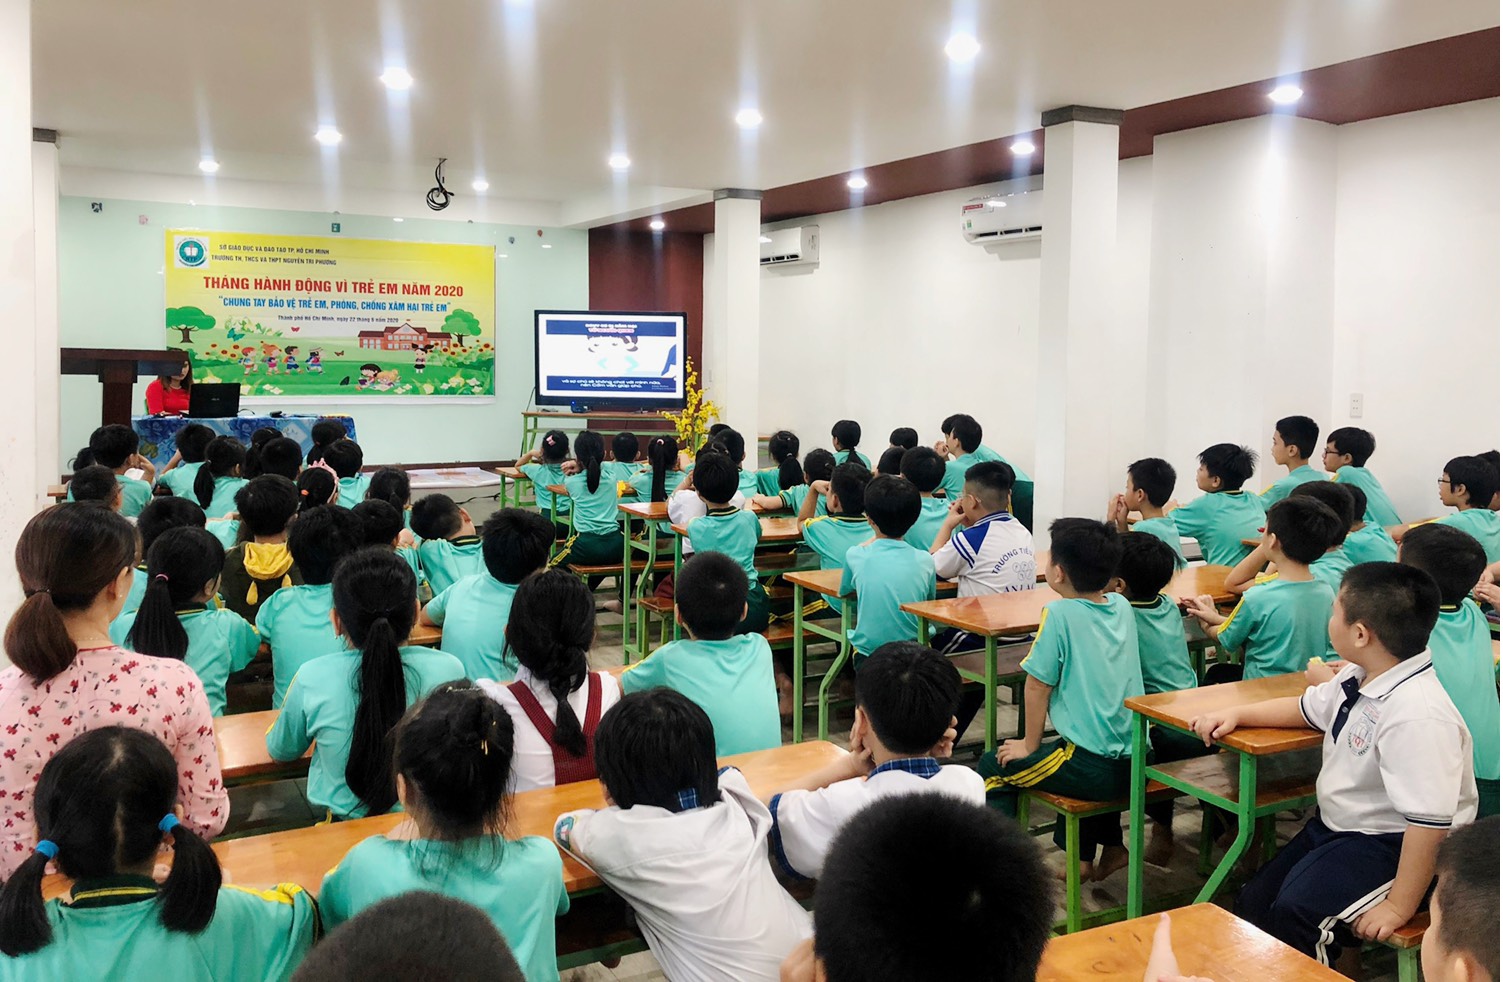 Trường Nguyễn Tri Phương hưởng ứng tháng hành động vì trẻ em